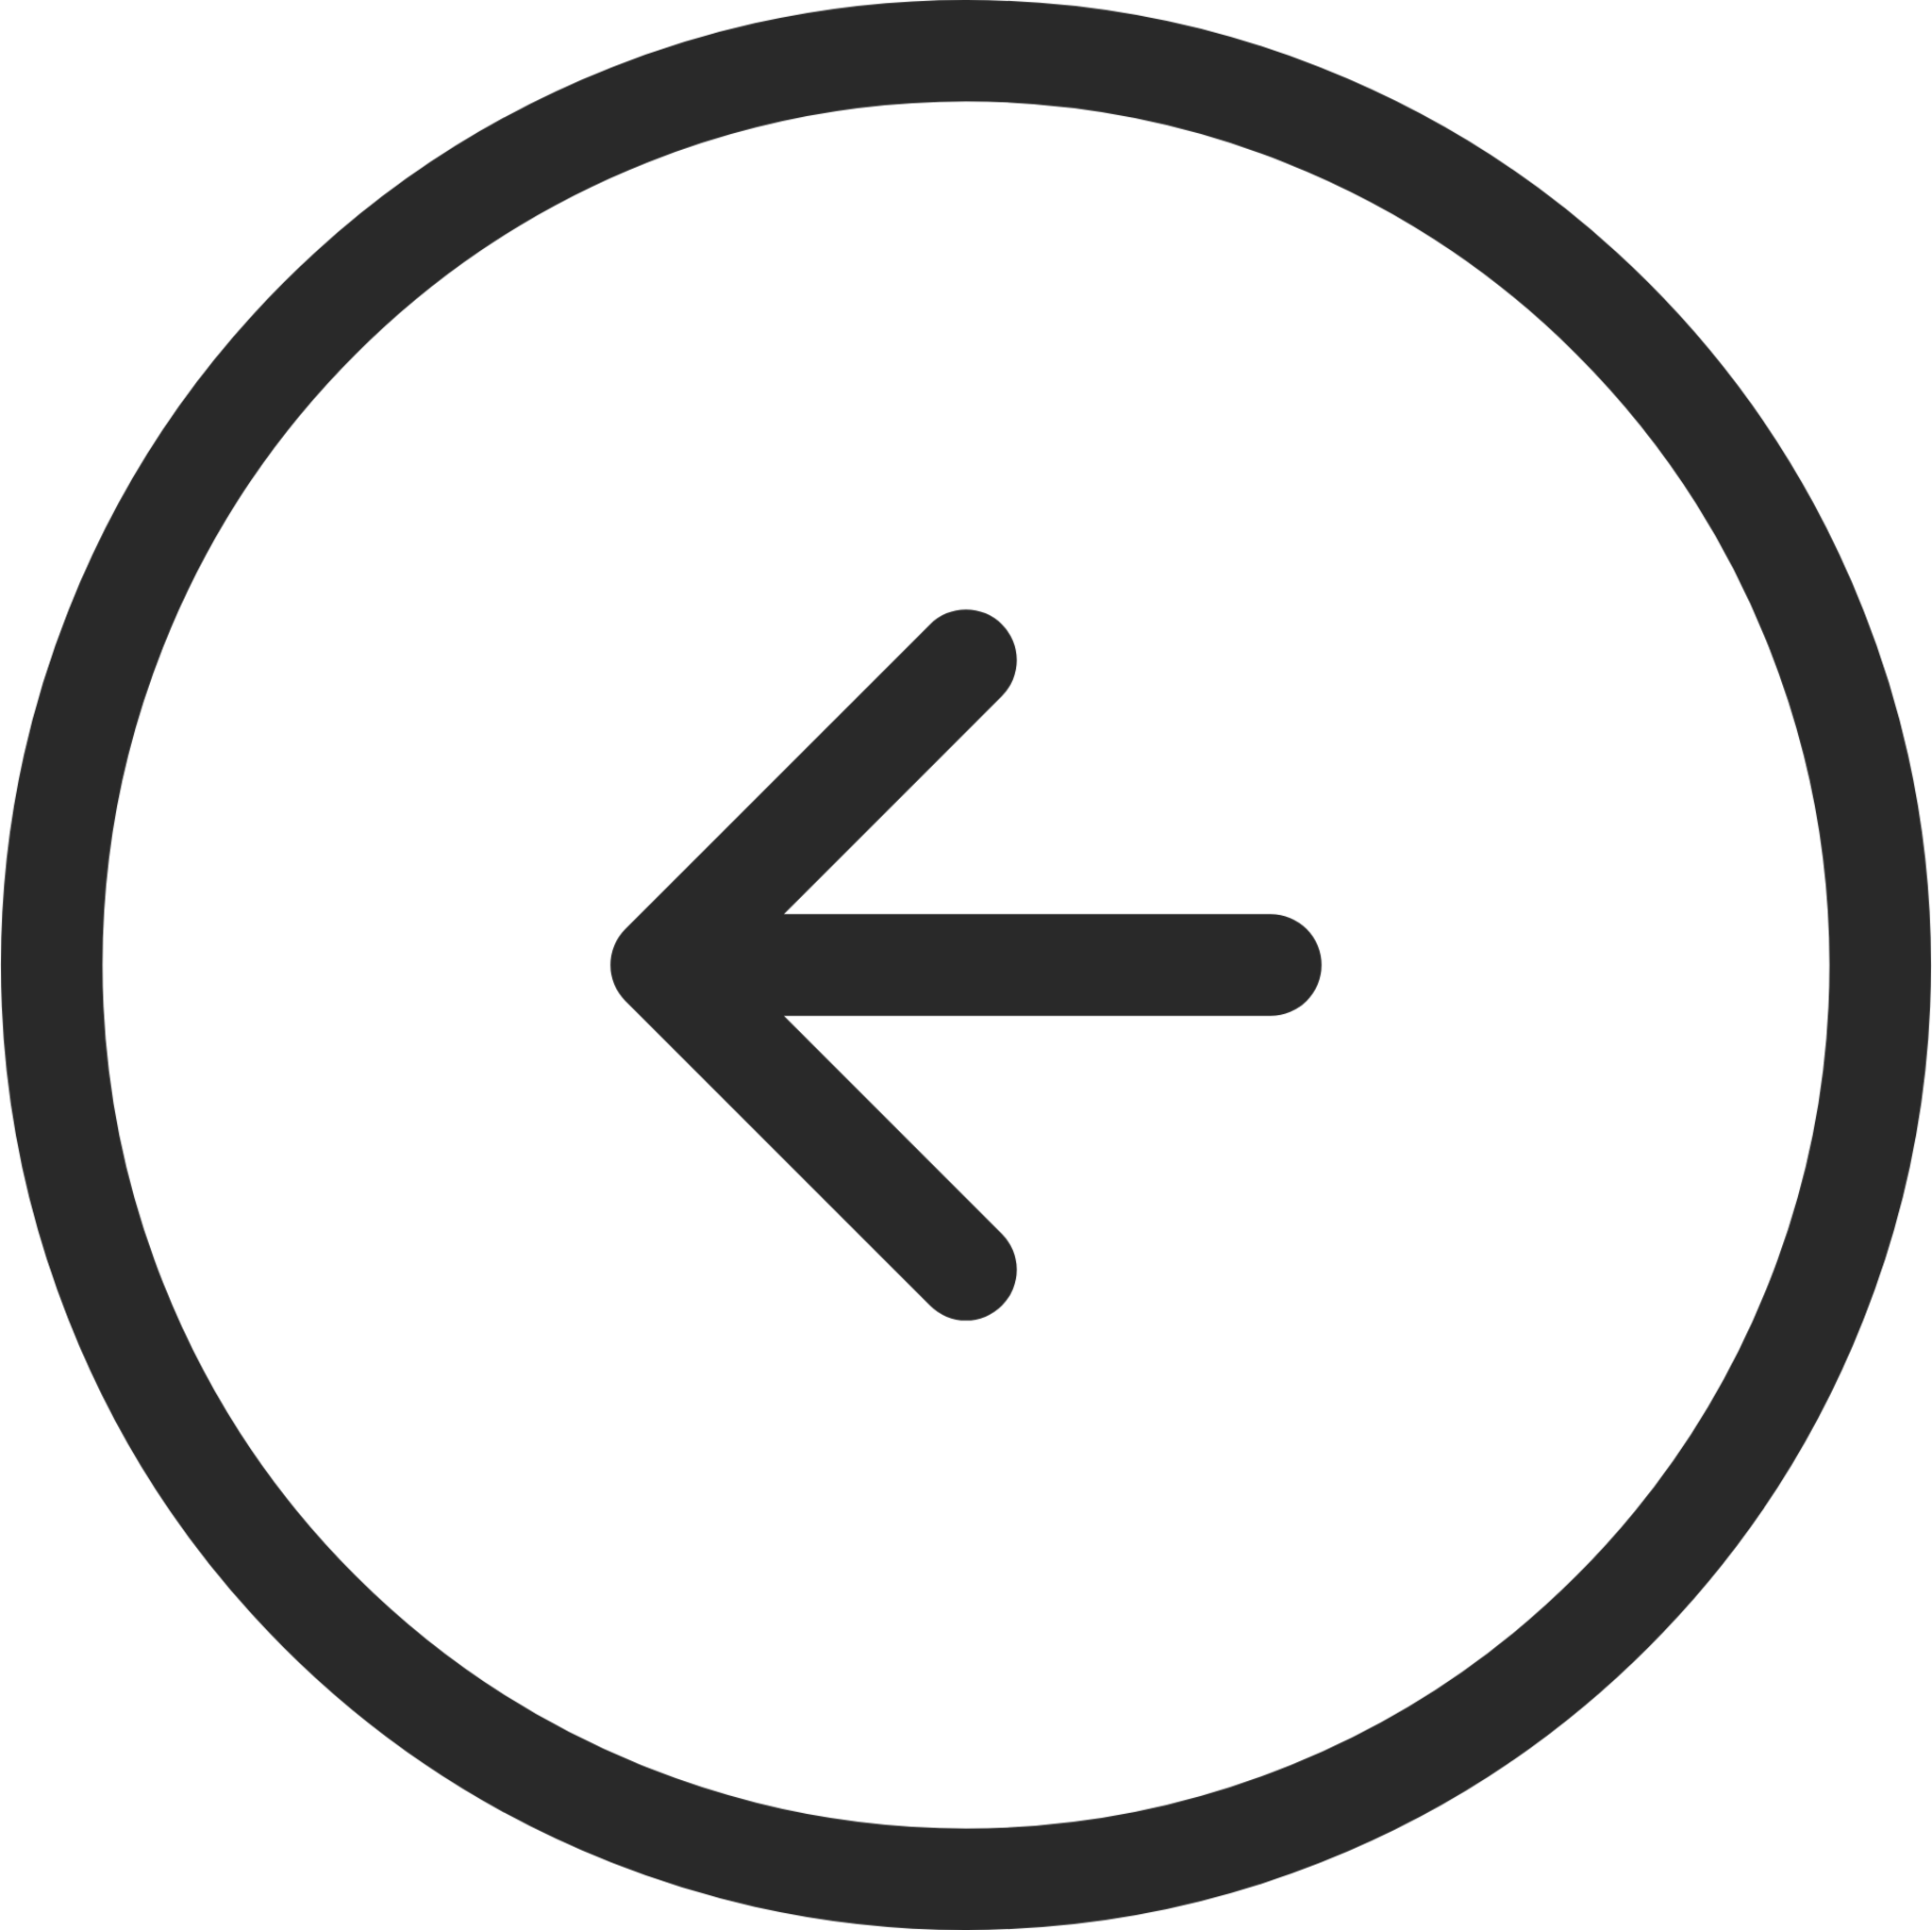 arrow left 5 circle icon